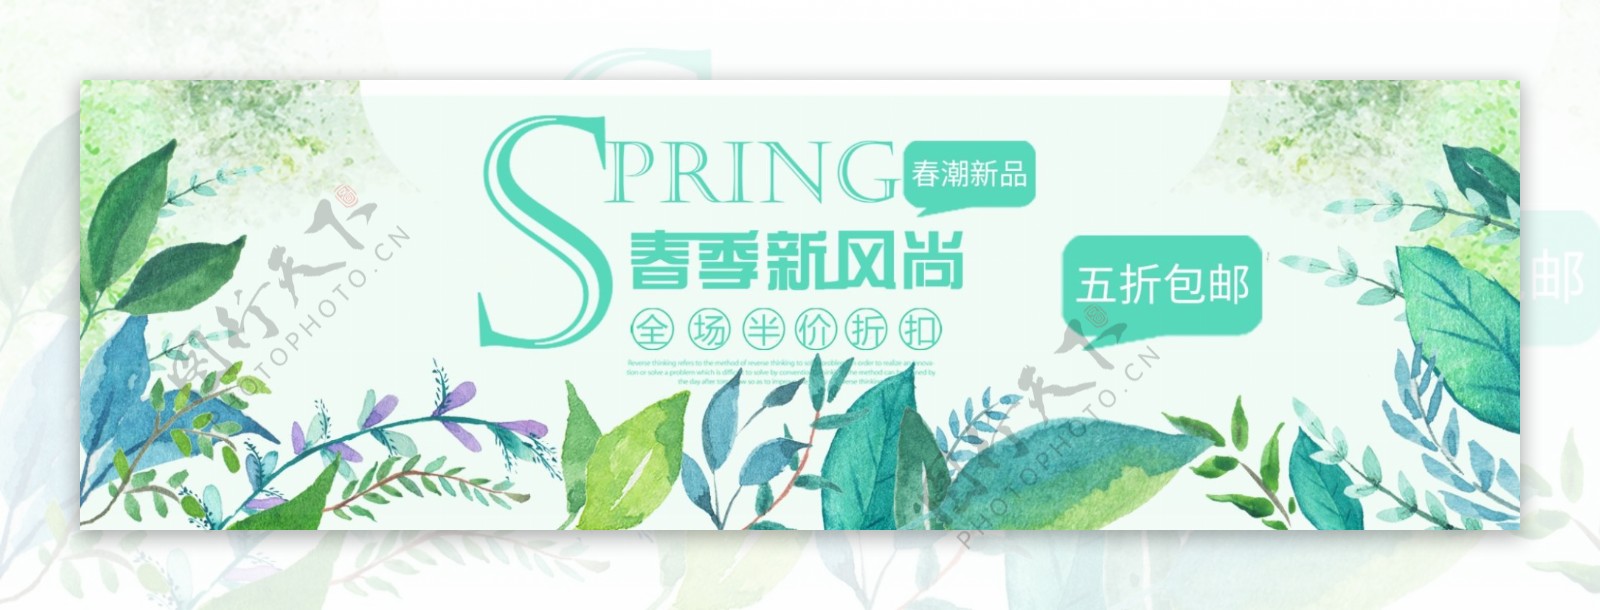 春季新风尚淘宝banner设计